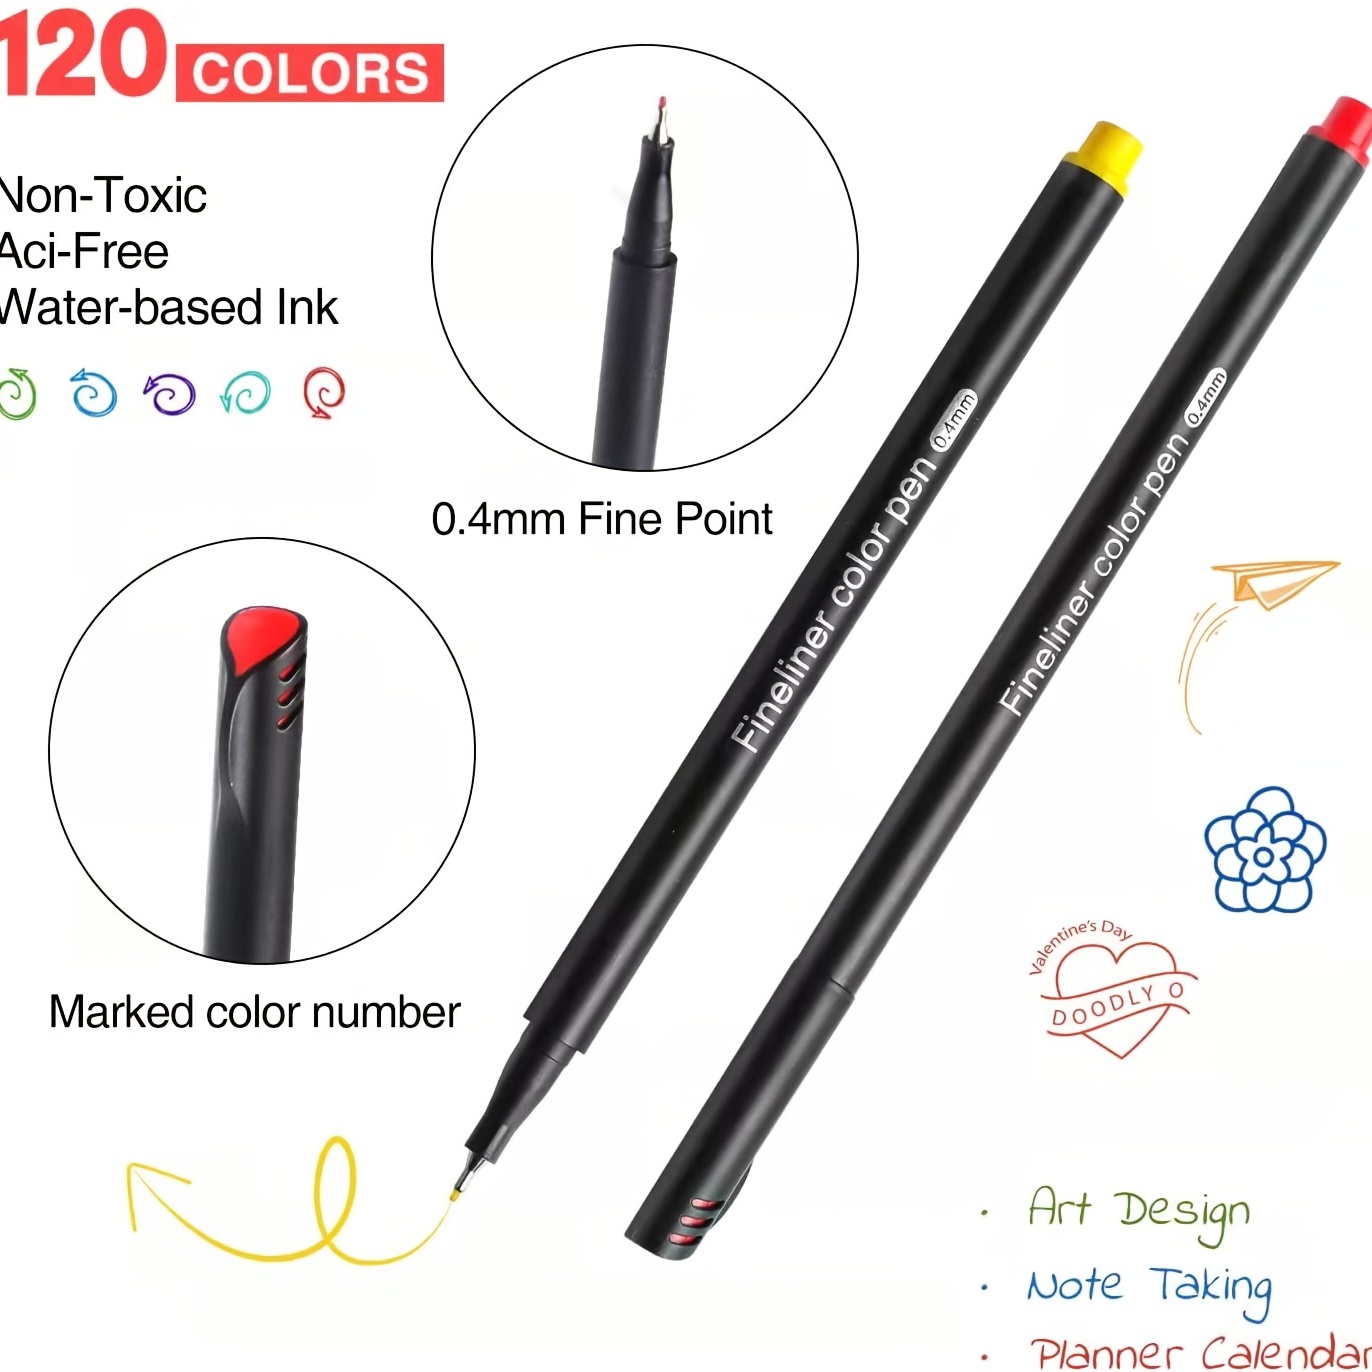 18 Pack Felt Tip Fine Line Marker Pens (0.4 mm Extra Fine Tip)